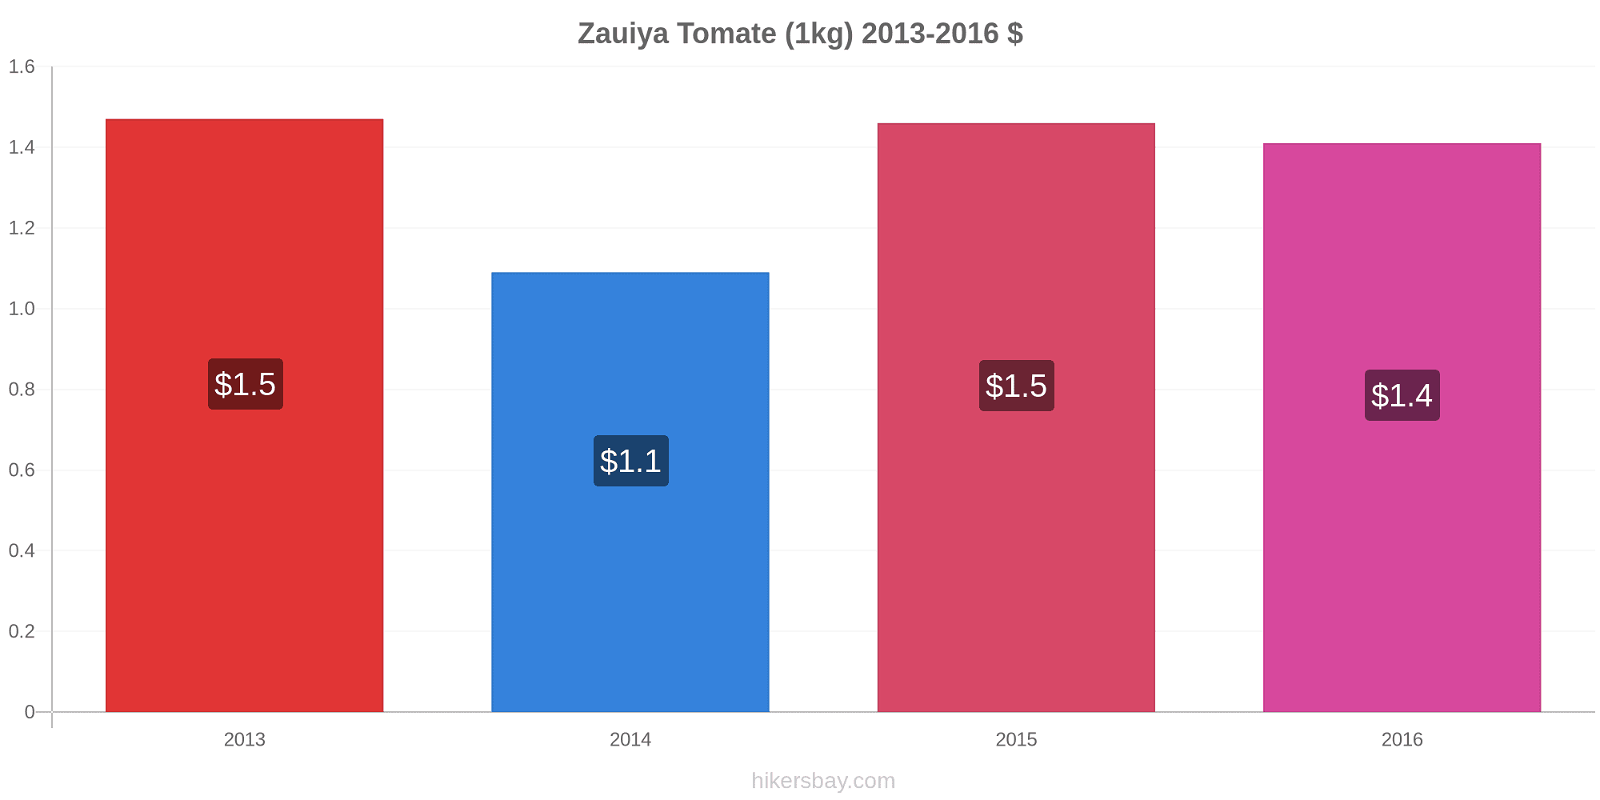 Zauiya cambios de precios Tomate (1kg) hikersbay.com